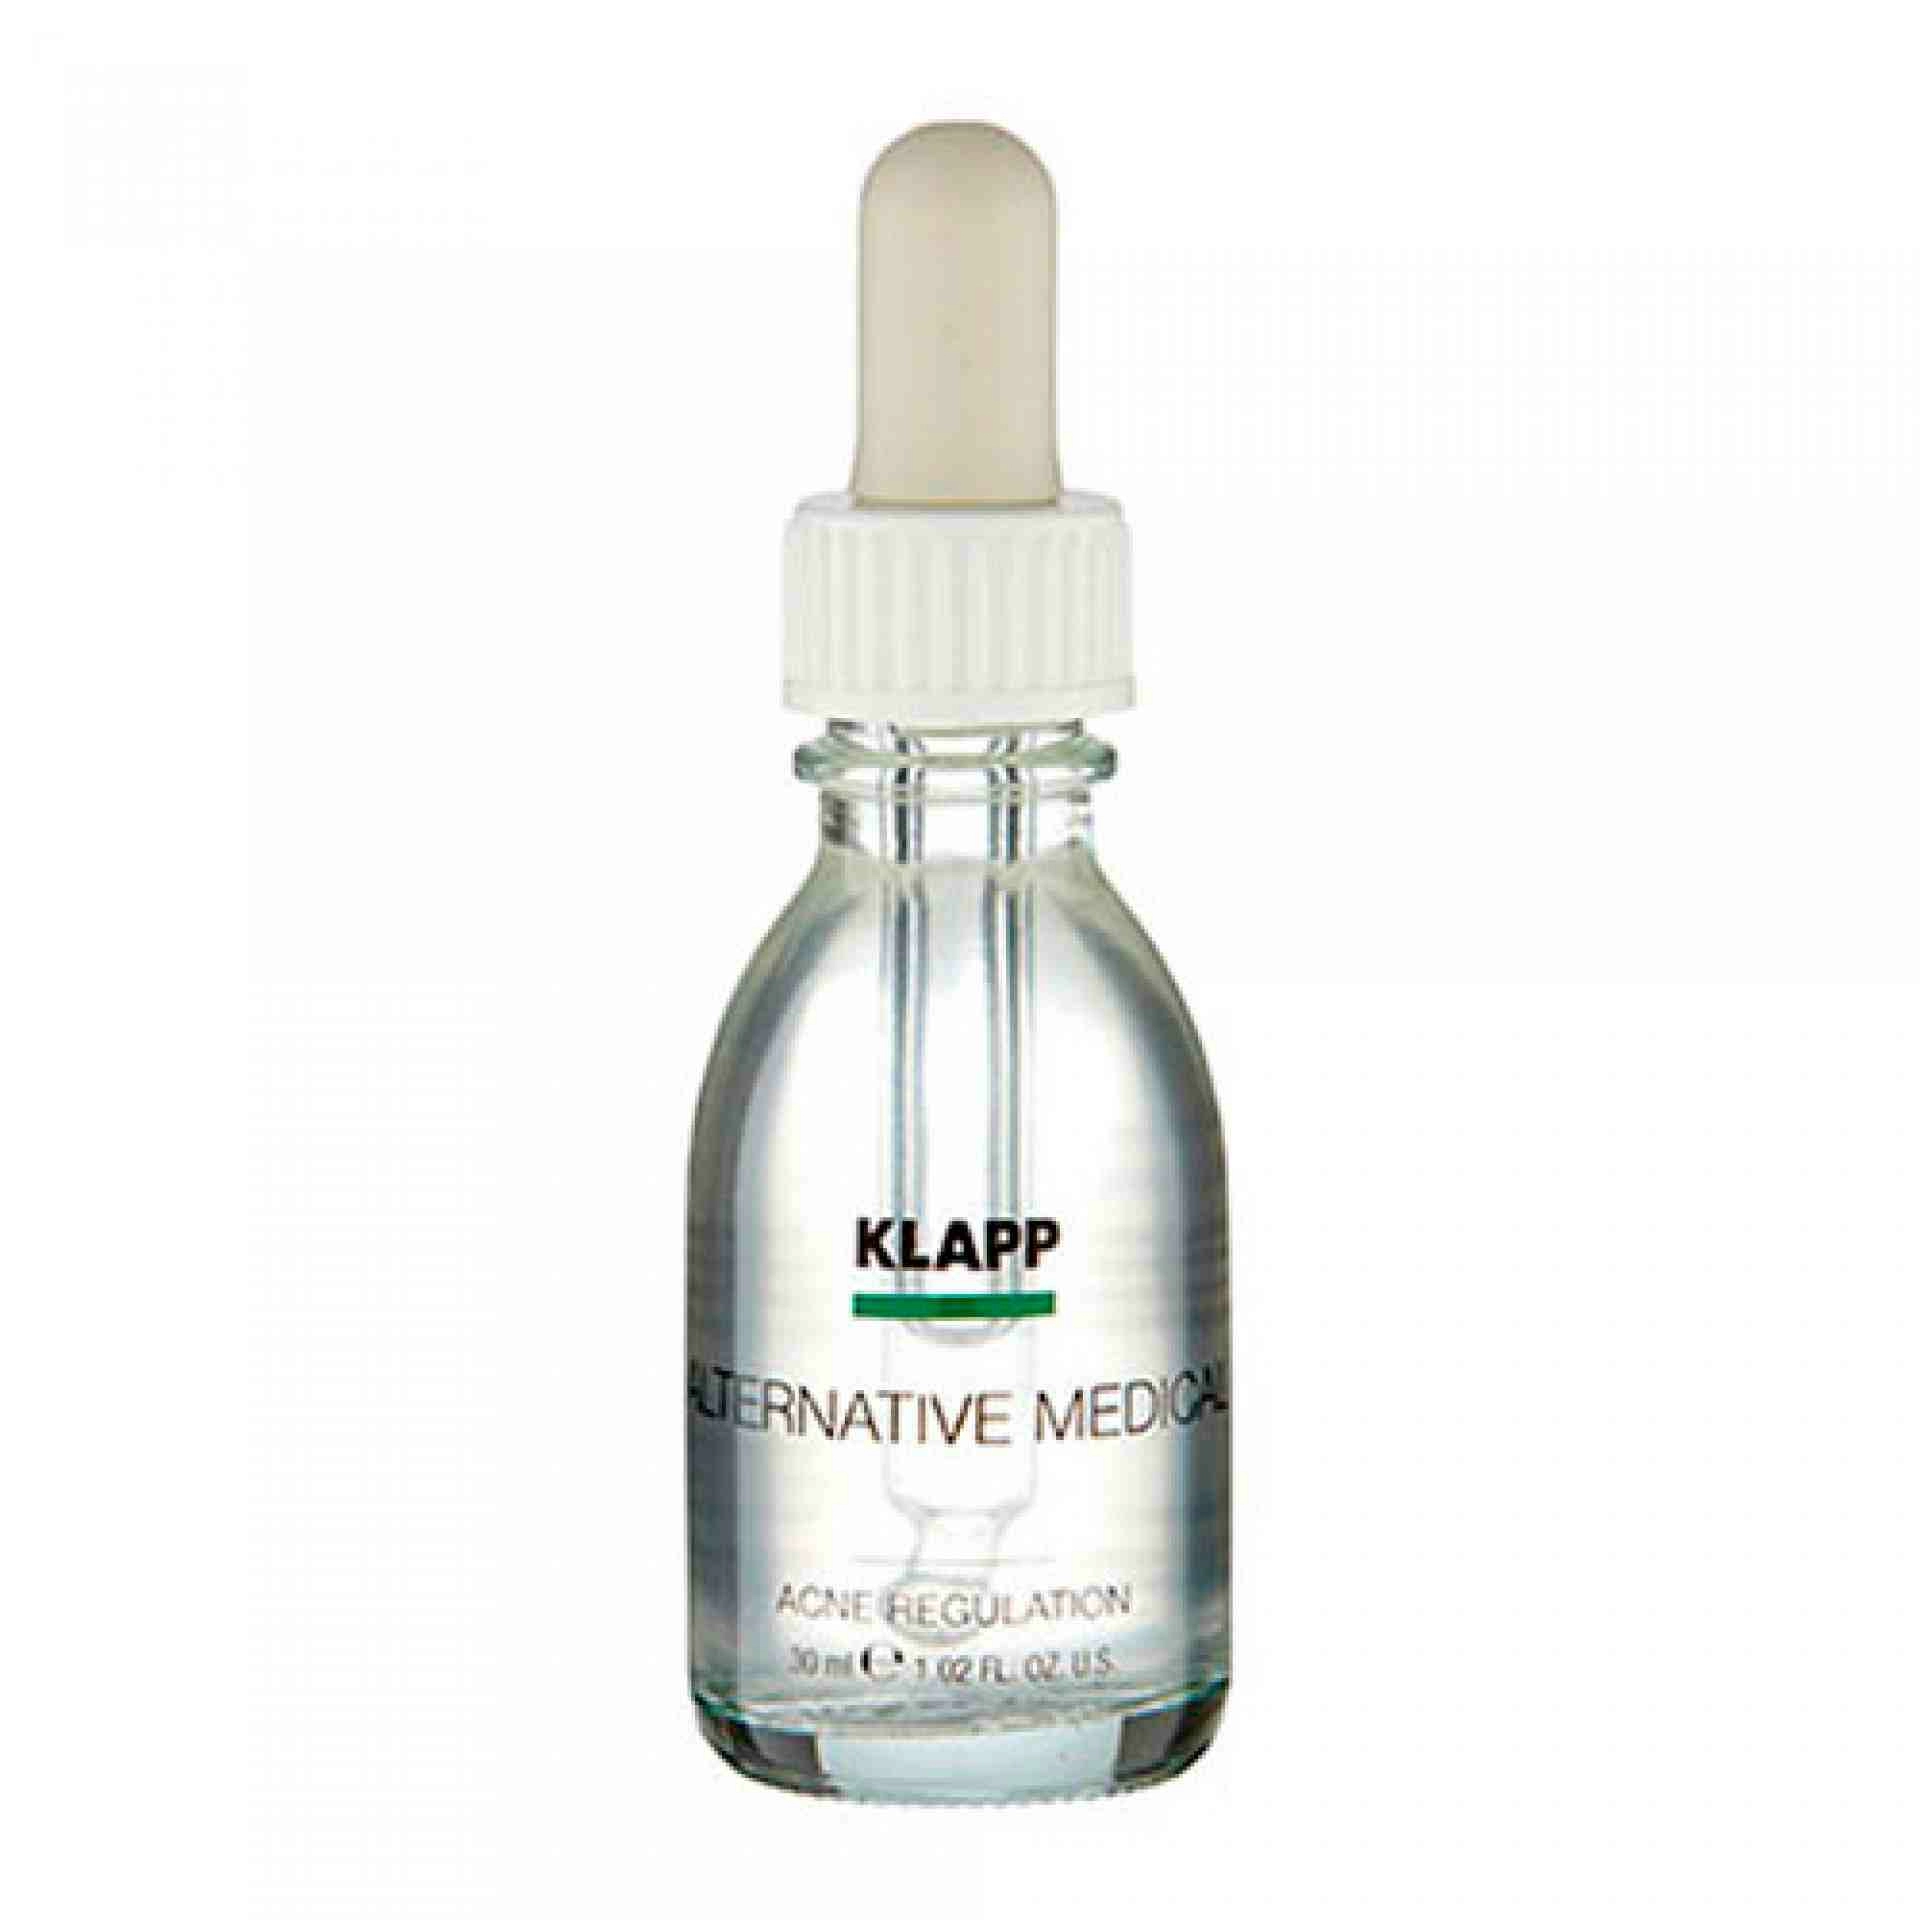 Acne Regulation 30ml | Serum Antiacné - Alternative Medical Concept - Klapp ®